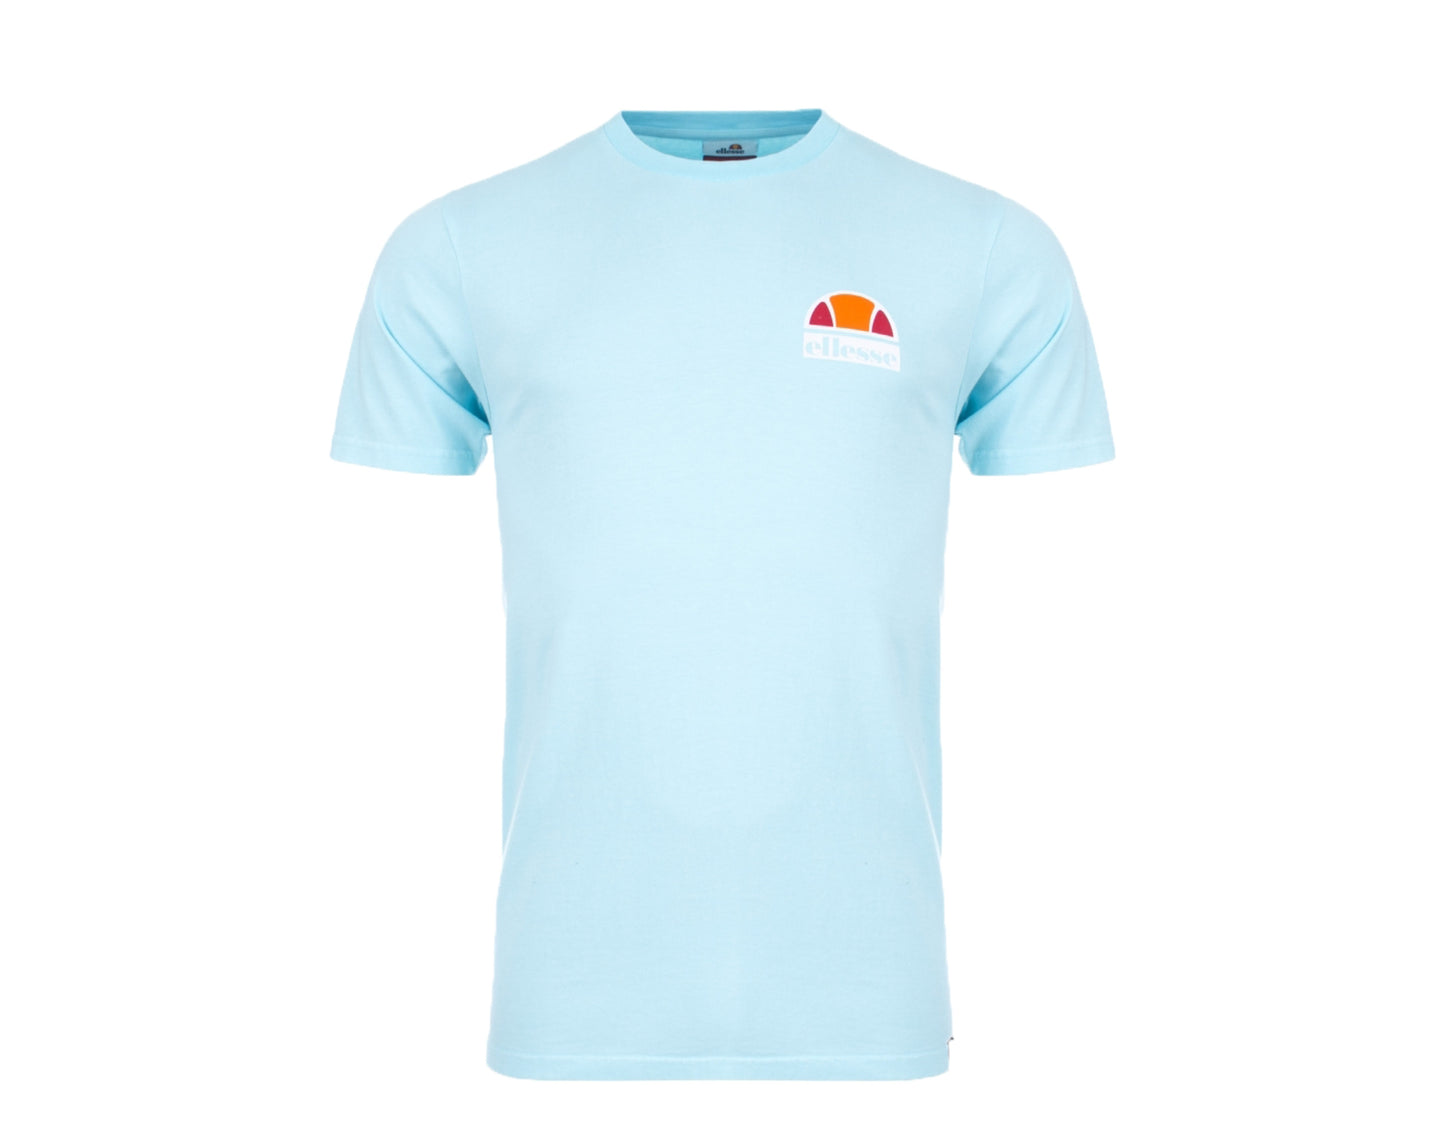 Ellesse Cuba Neon Blue Men's T-Shirt SHB06831-499